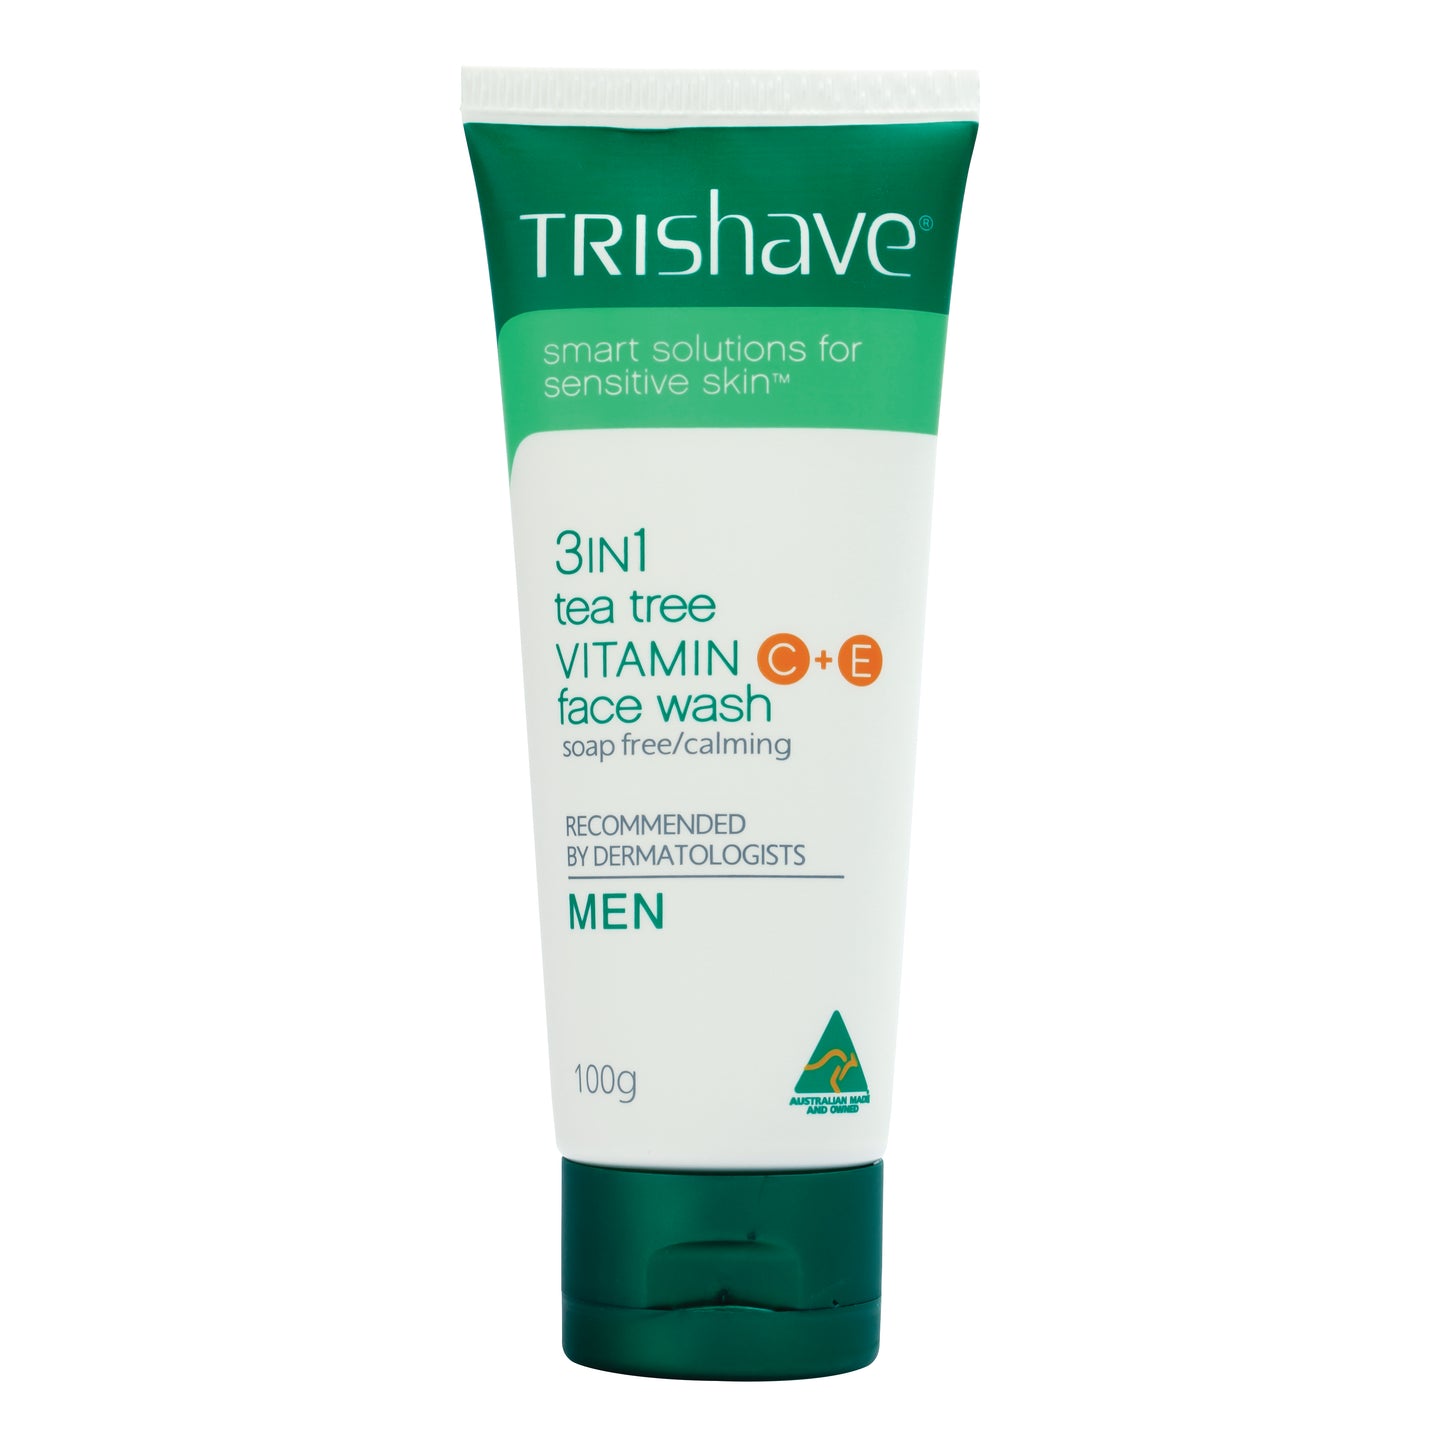 TriShave 3in1 Tea Tree Vitamin C+E Face Wash - Men 100g